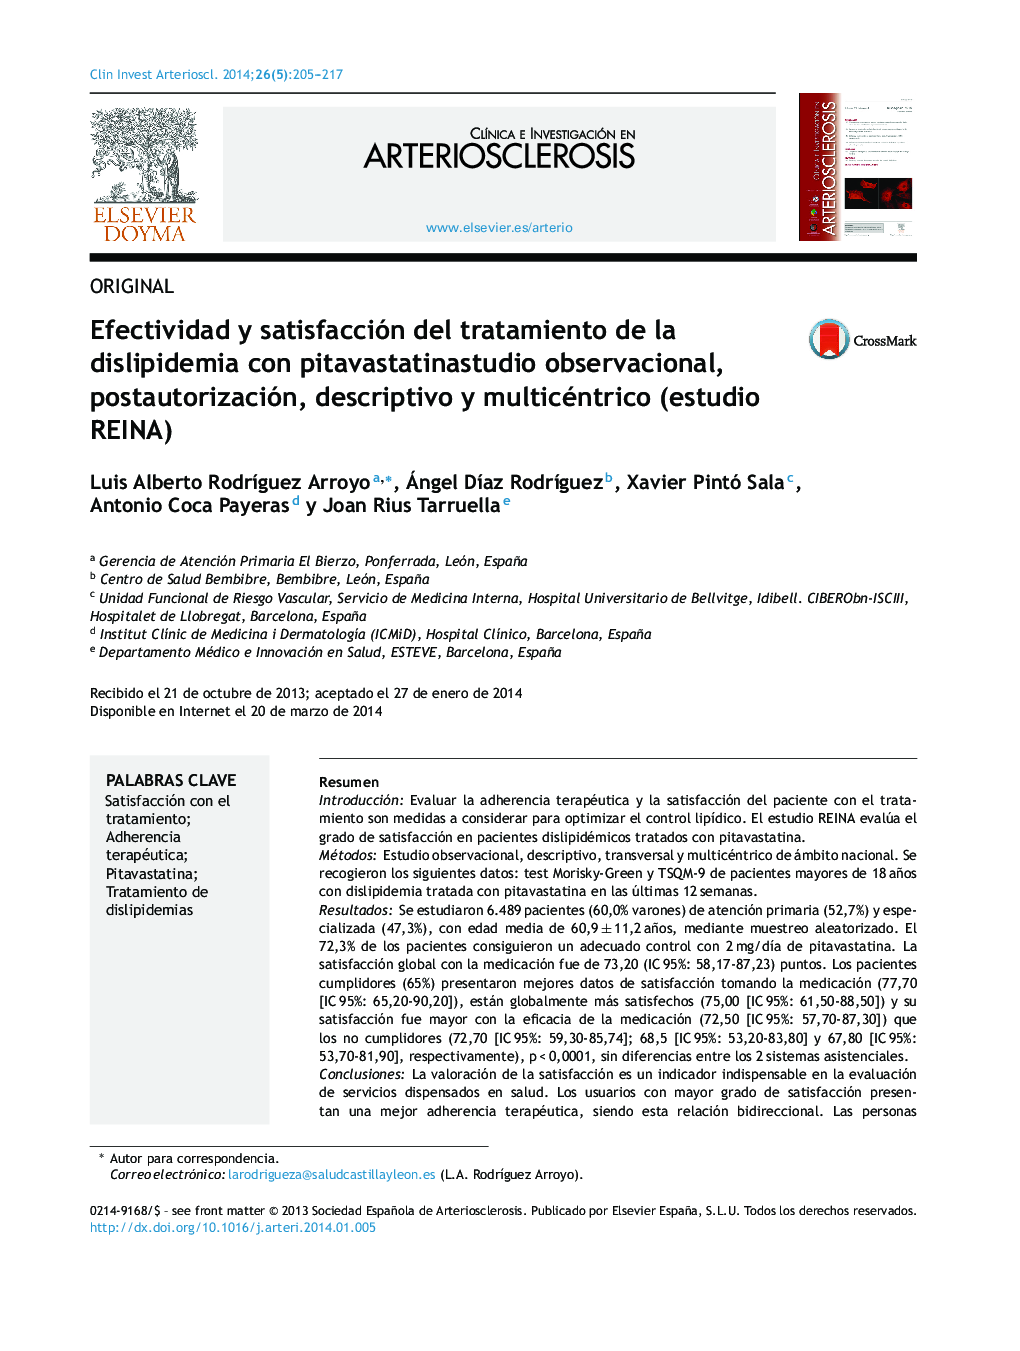 Efectividad y satisfacción del tratamiento de la dislipidemia con pitavastatinastudio observacional, postautorización, descriptivo y multicéntrico (estudio REINA)